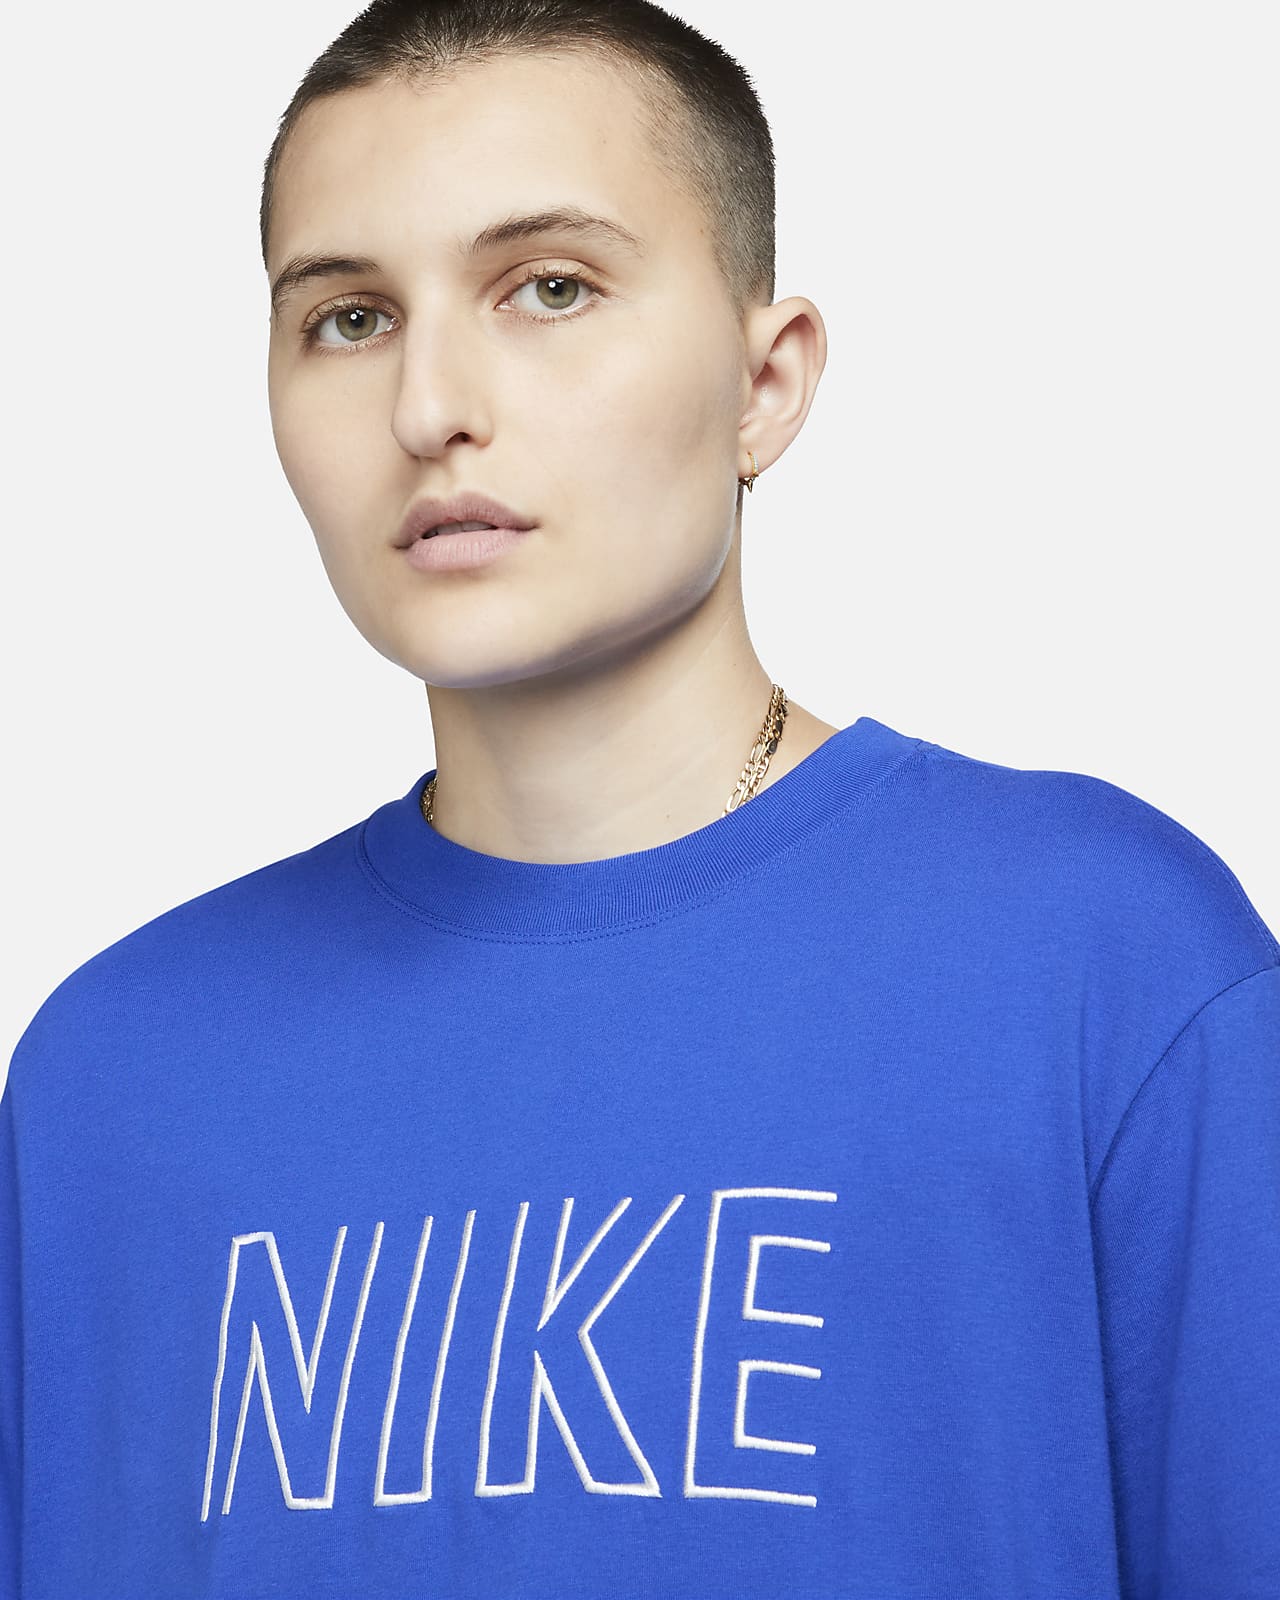 Nike Sportswear Women's T-Shirt. Nike LU